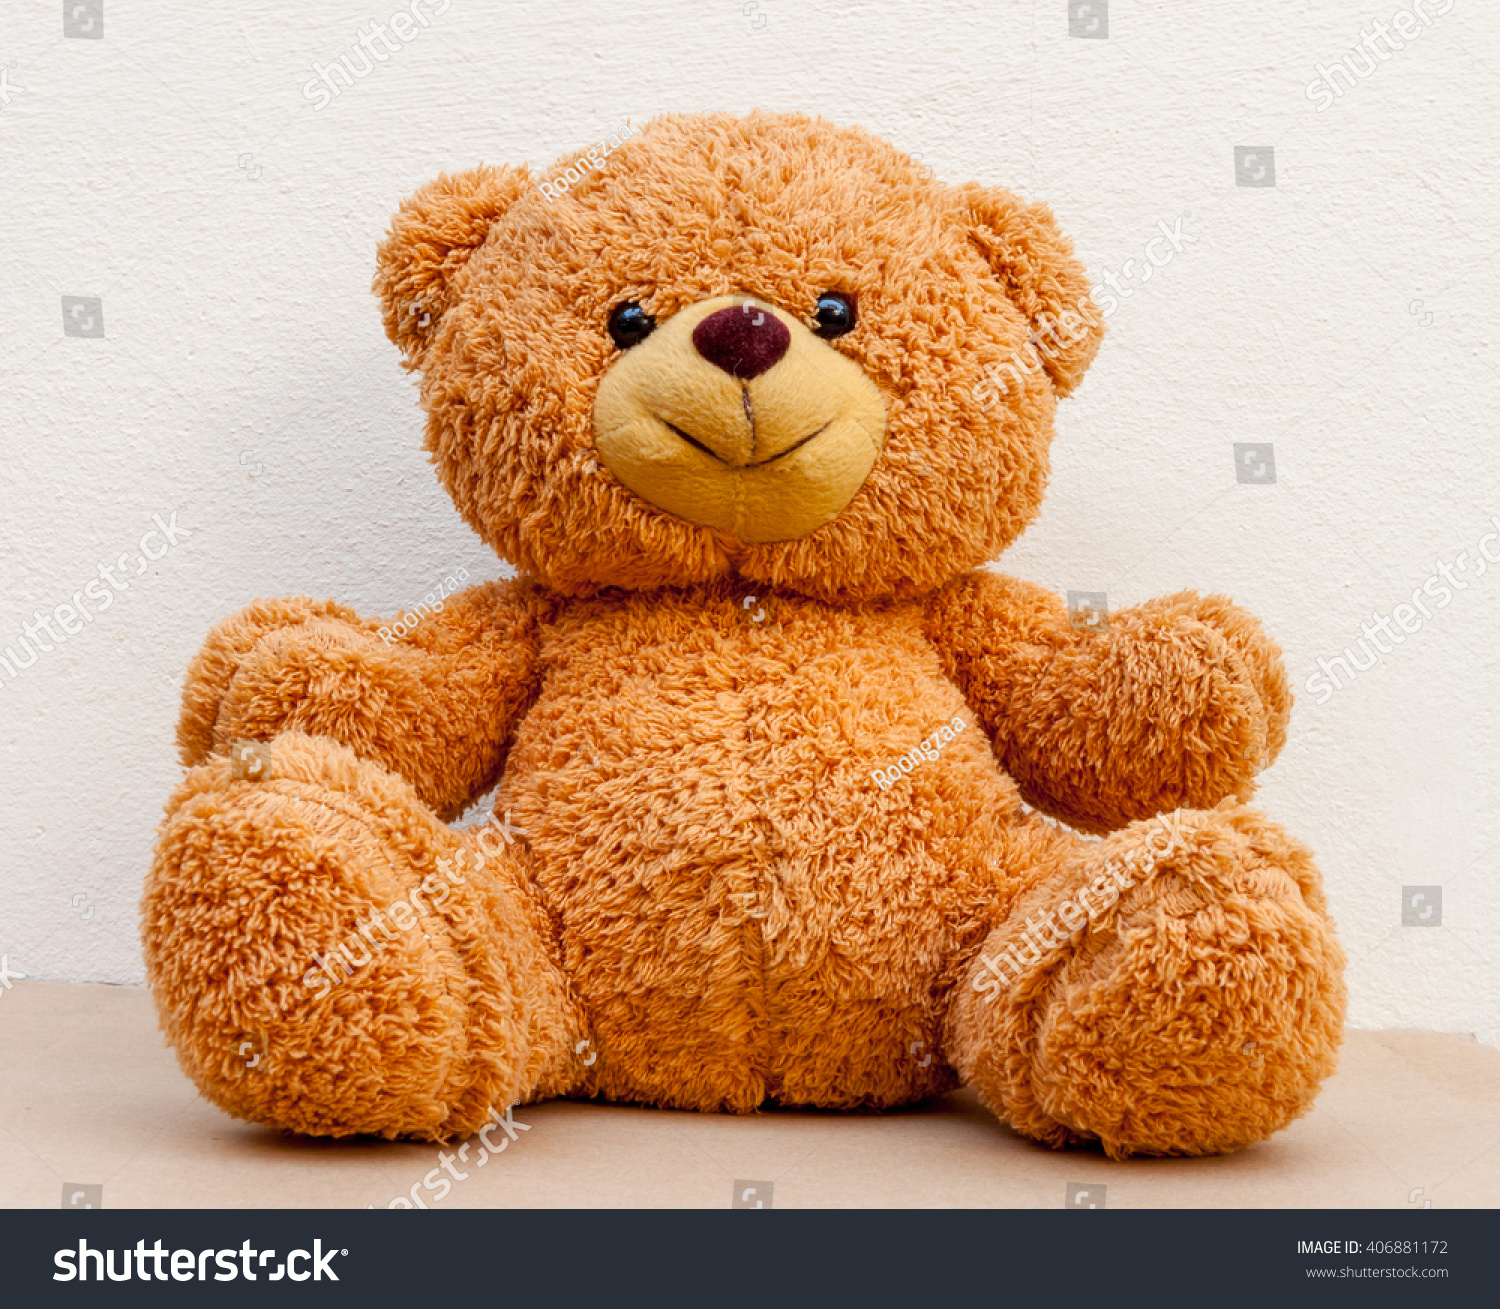 nice teddy bear